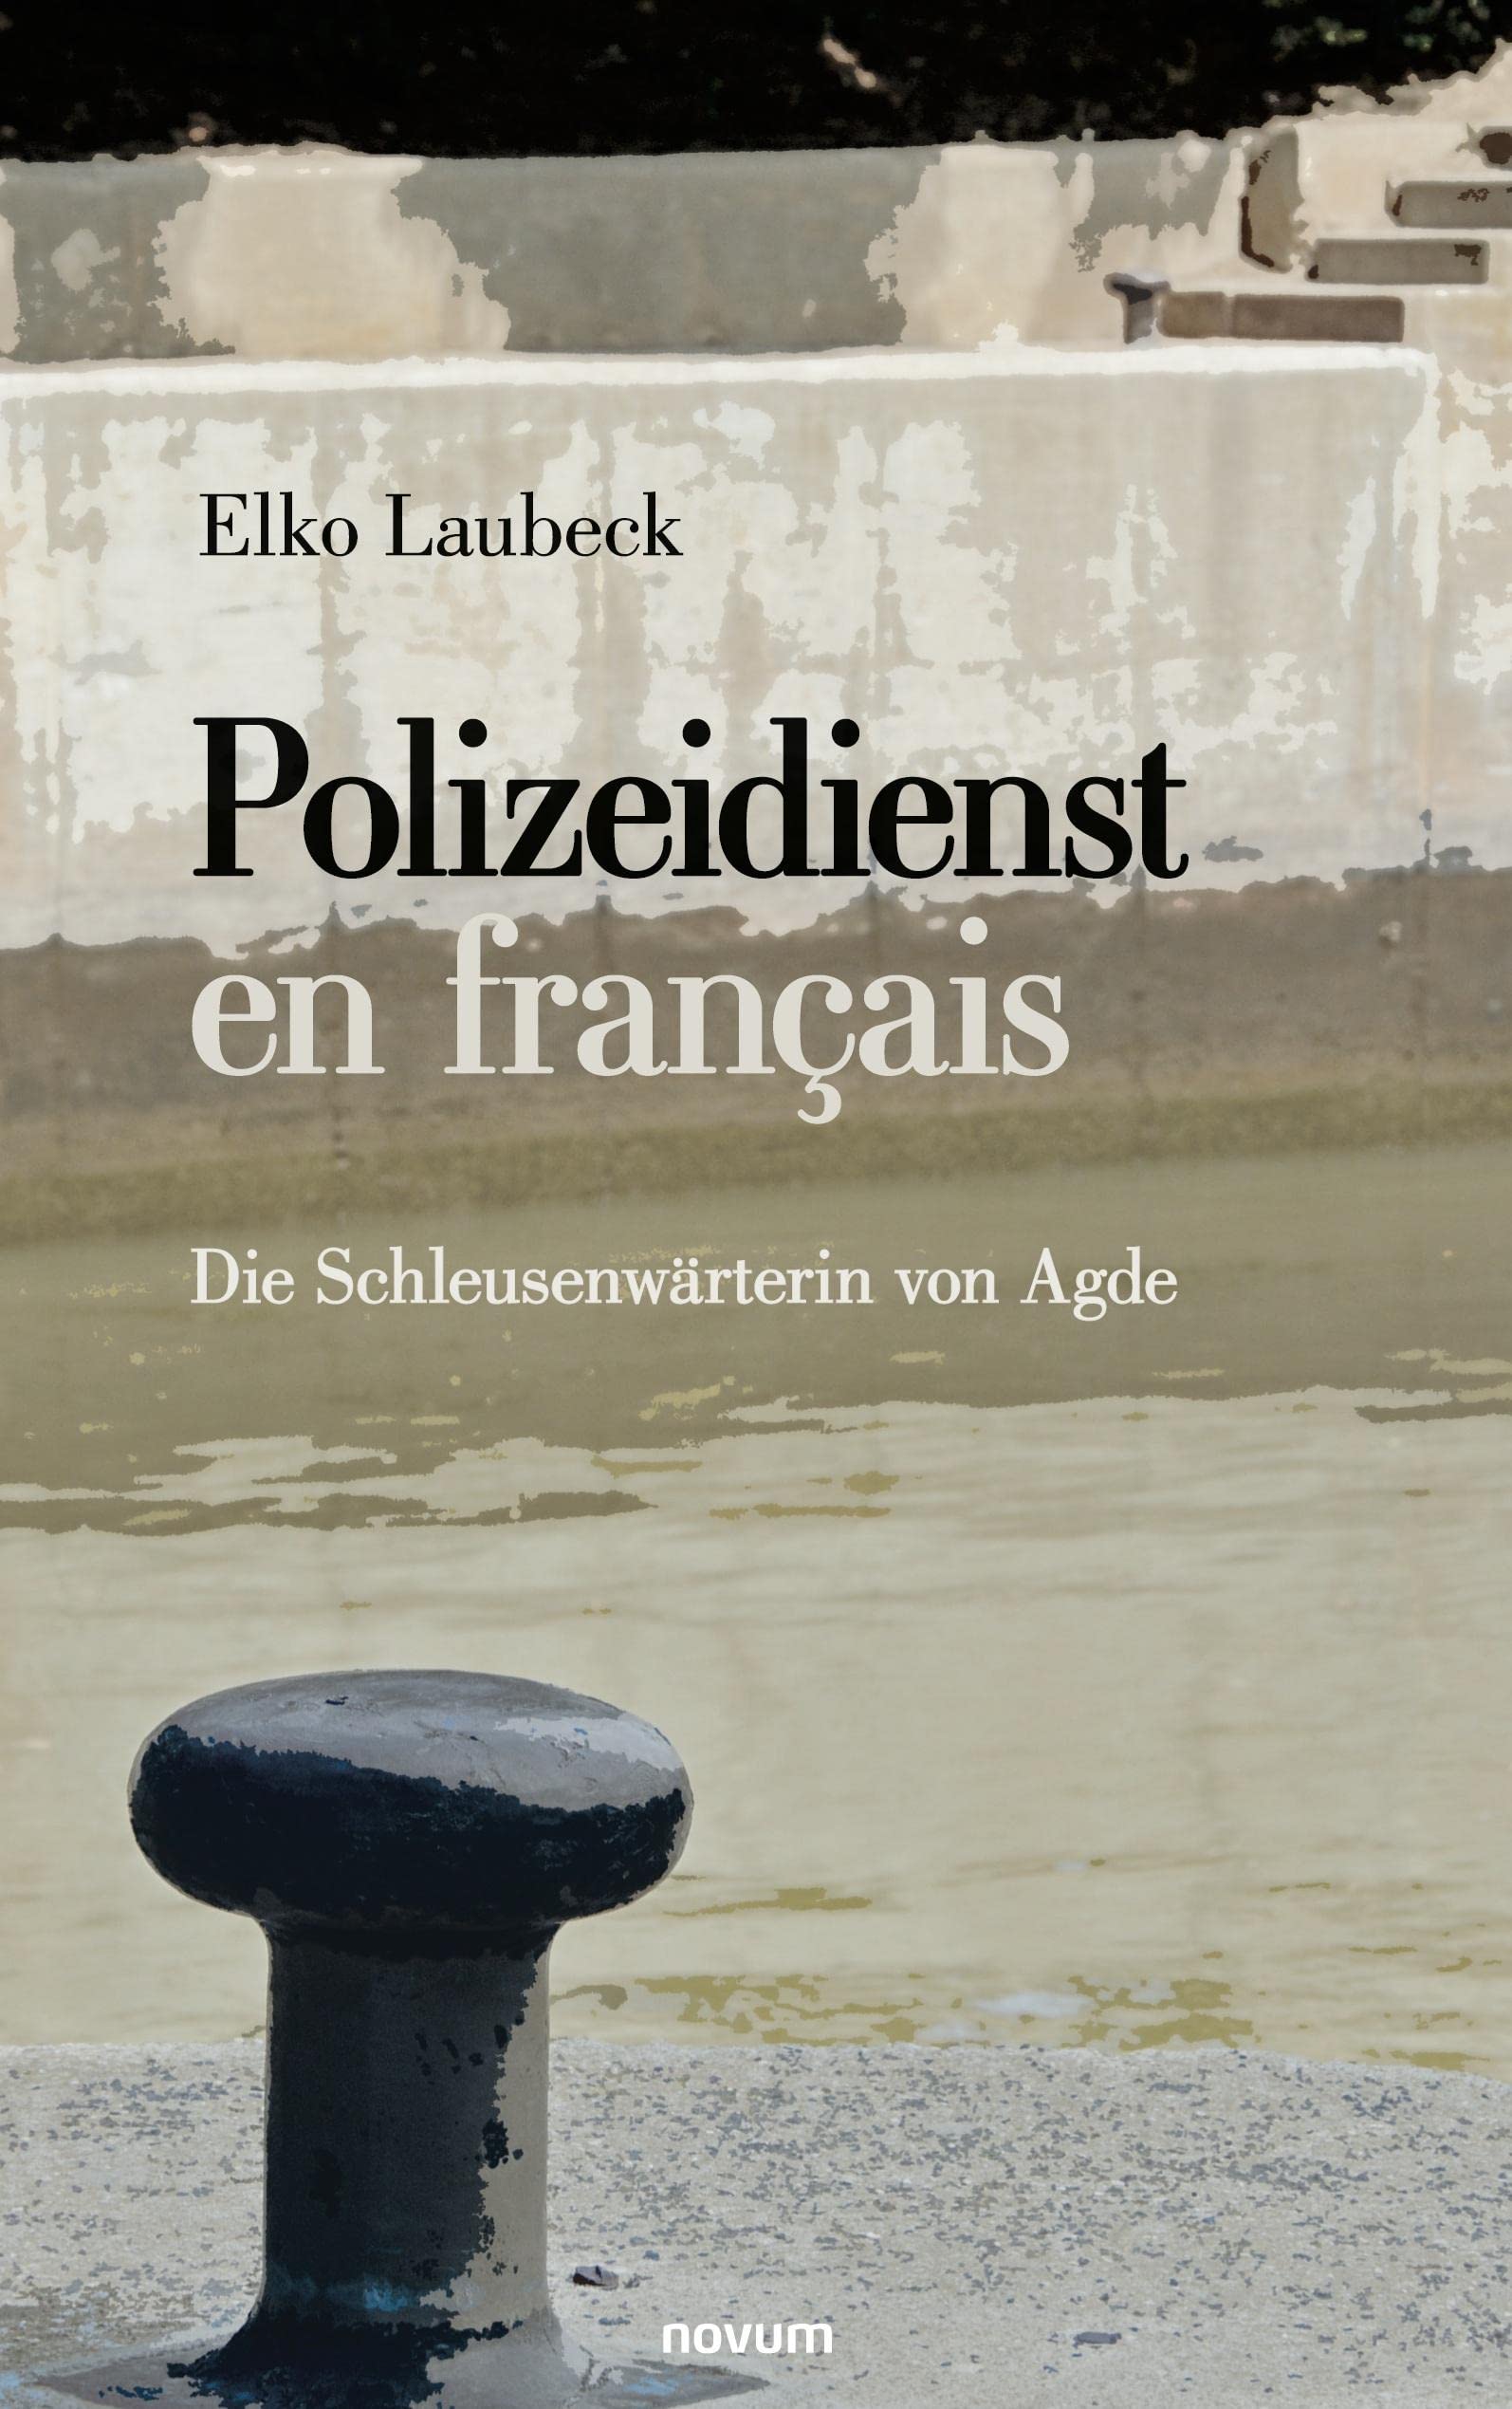 Elko Laubeck, Polizeidienst en français